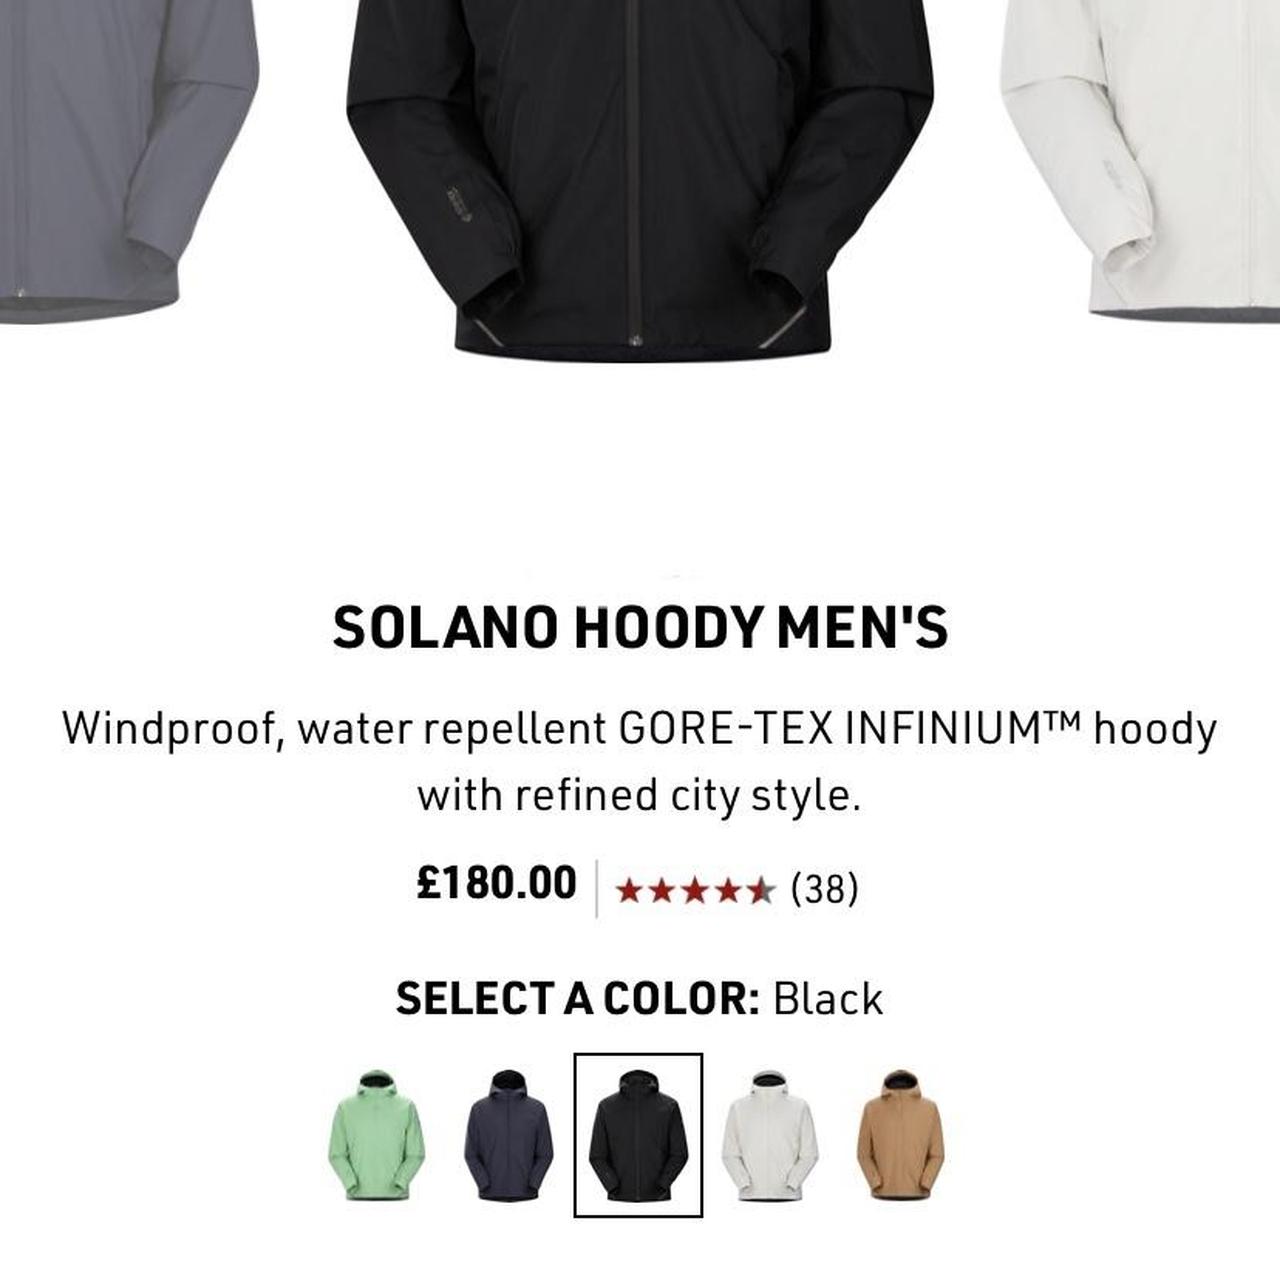 Solano Hoody Men's